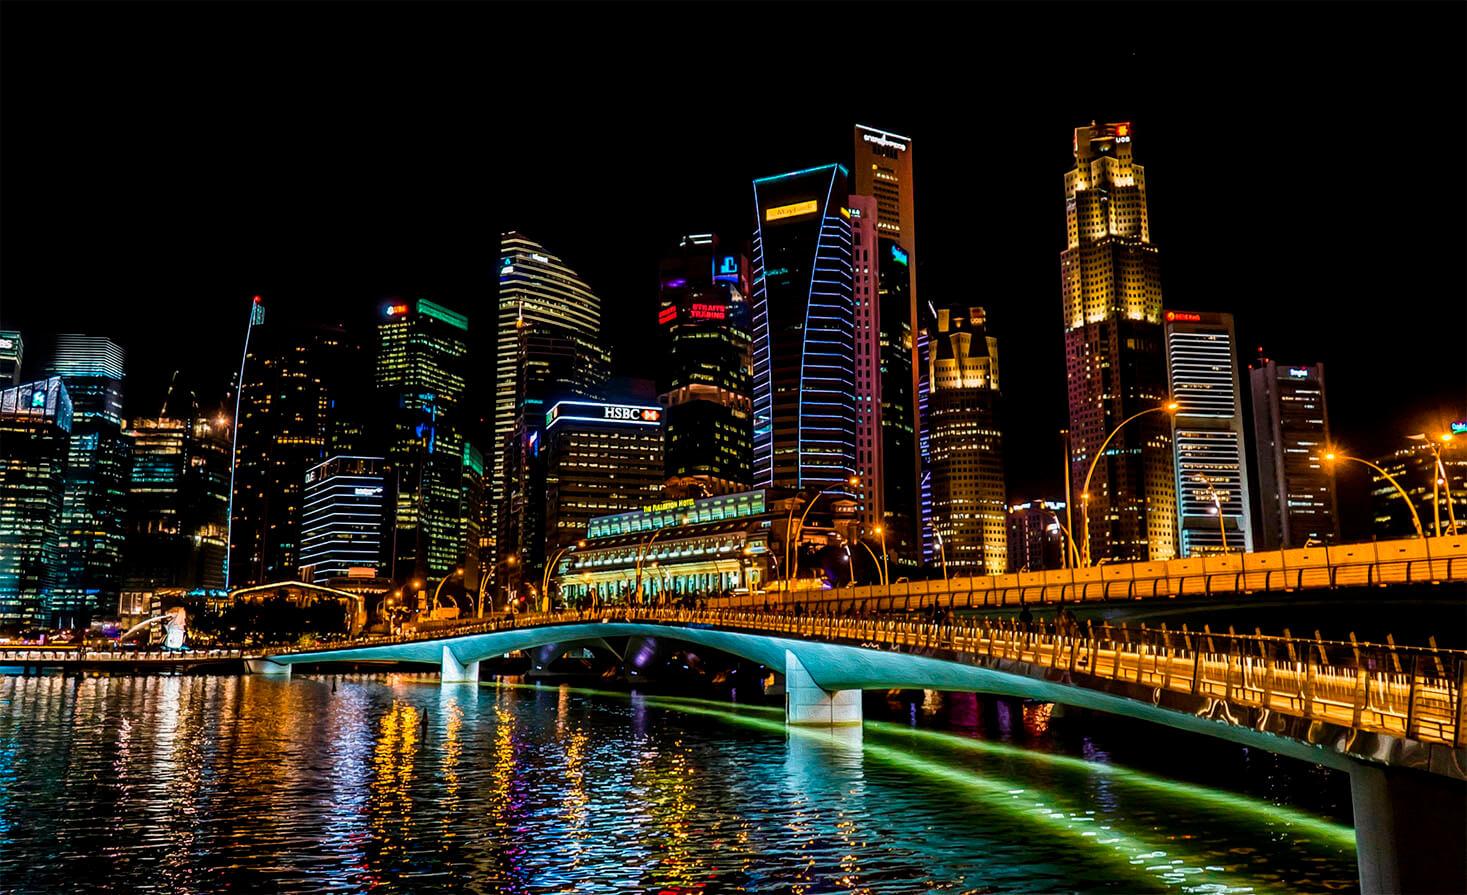 Zã Singapore